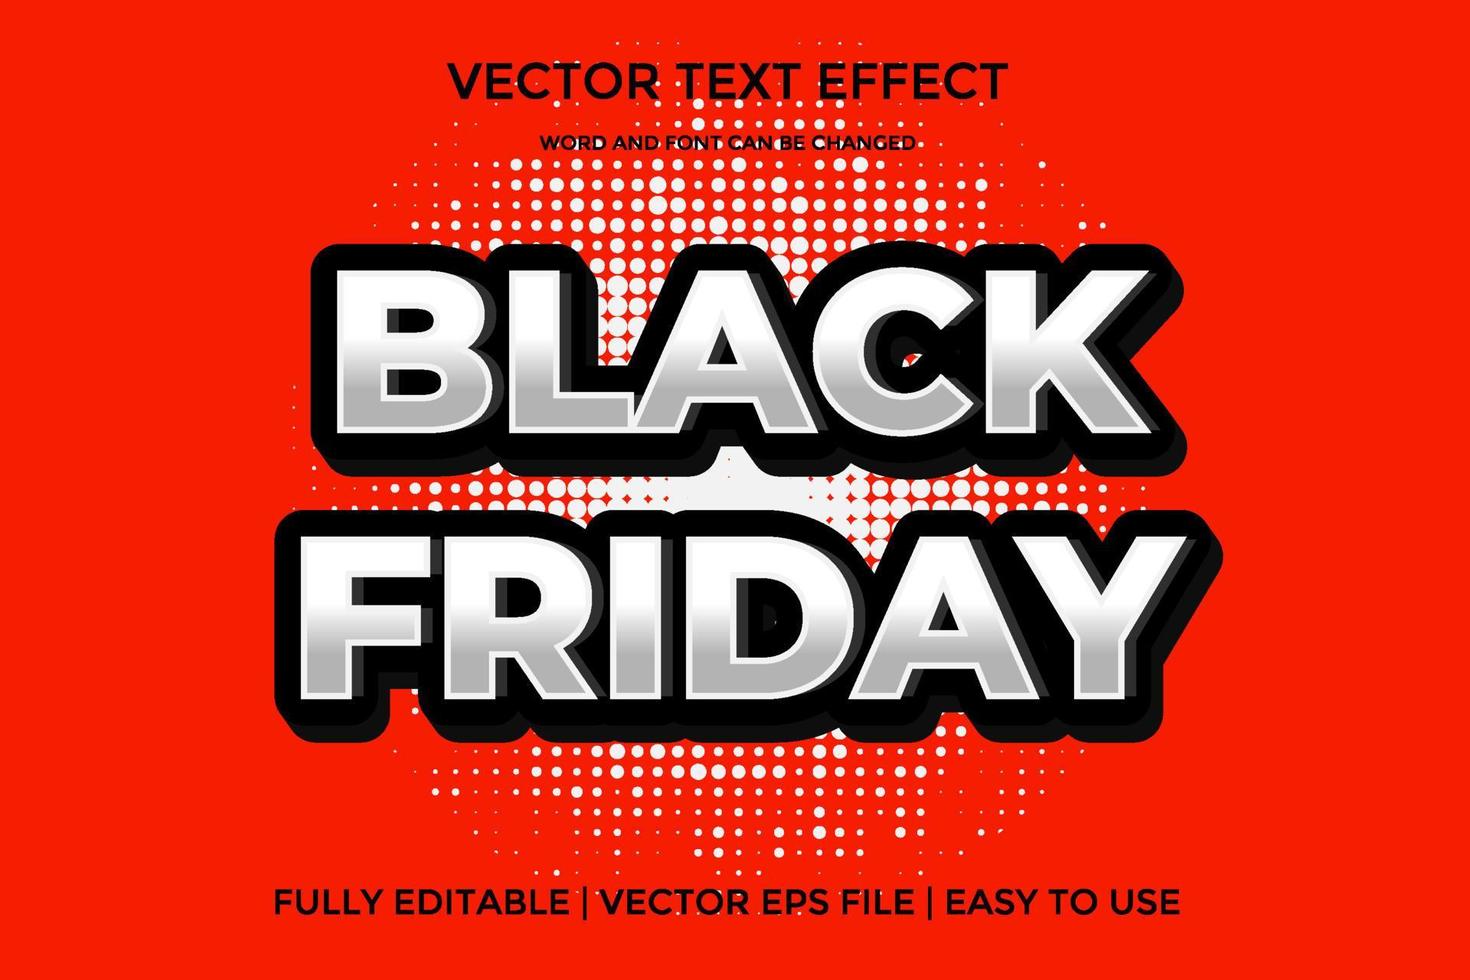 schwarzer freitag vektor texteffekt editierbar